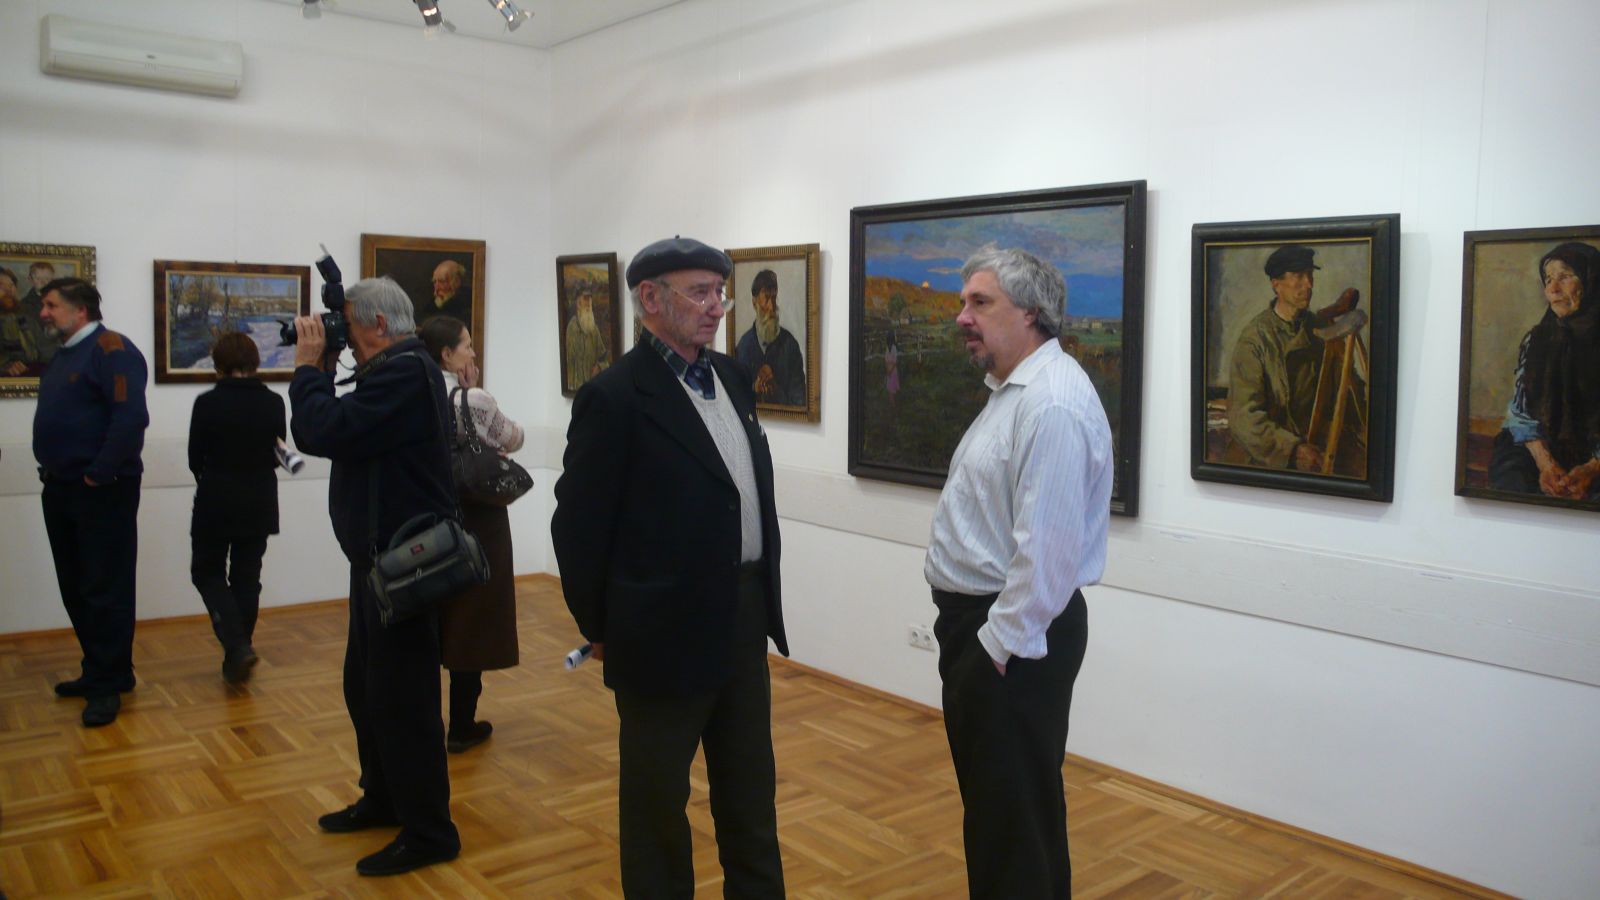 «Плащаница Вселенной» - так называется выставка, открывшаяся 11 ноября 2011 года в Нижегородском государственном выставочном комплексе на площади Минина и Пожарского.